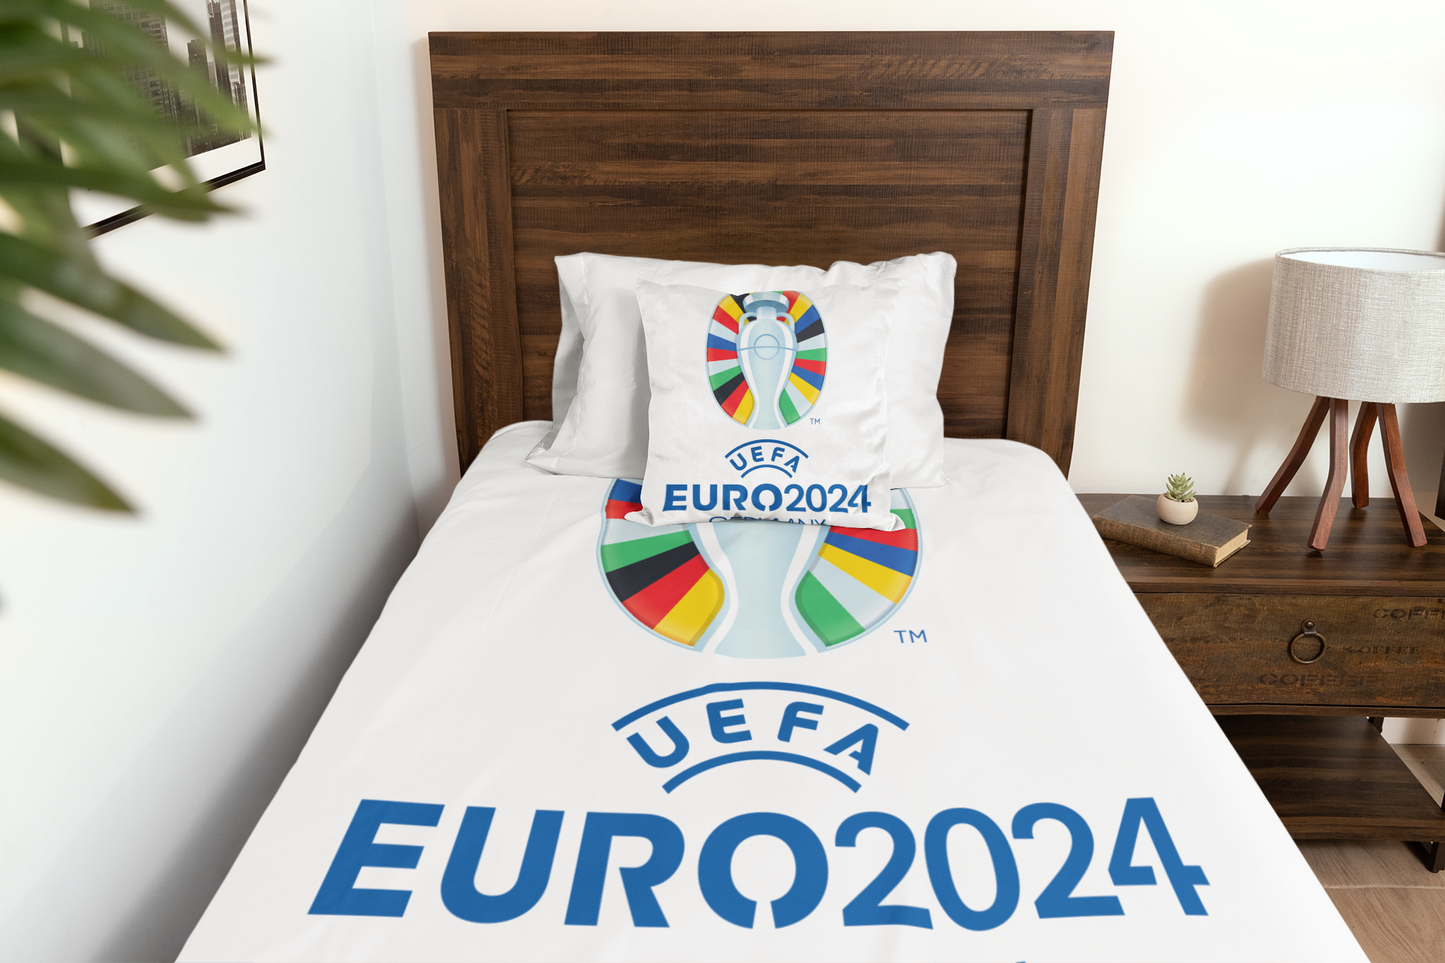 UEFA 2024 Bed Set